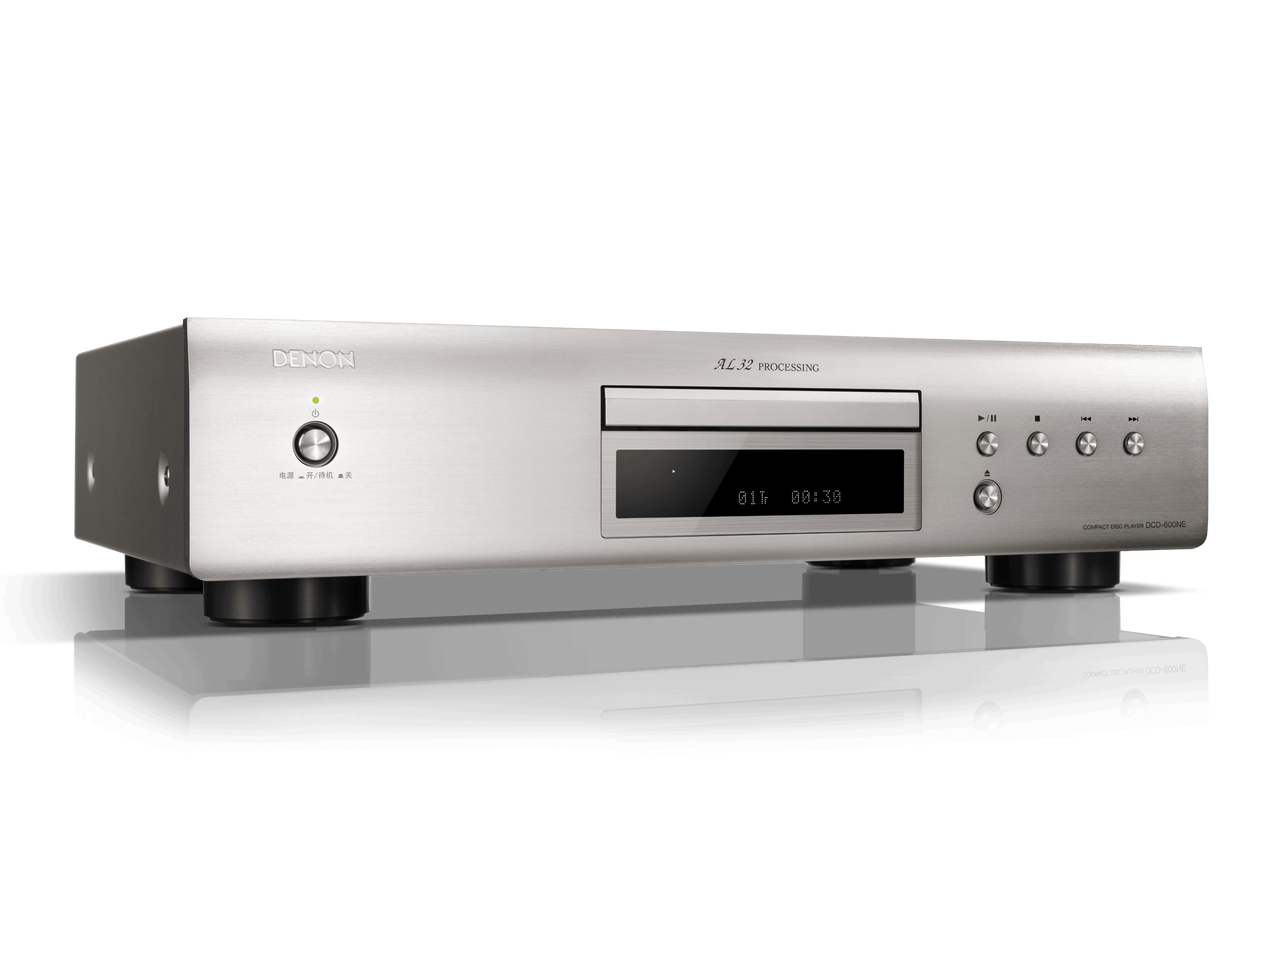 Denon DCD-600NE CD Player with AL32 Processing - Silver